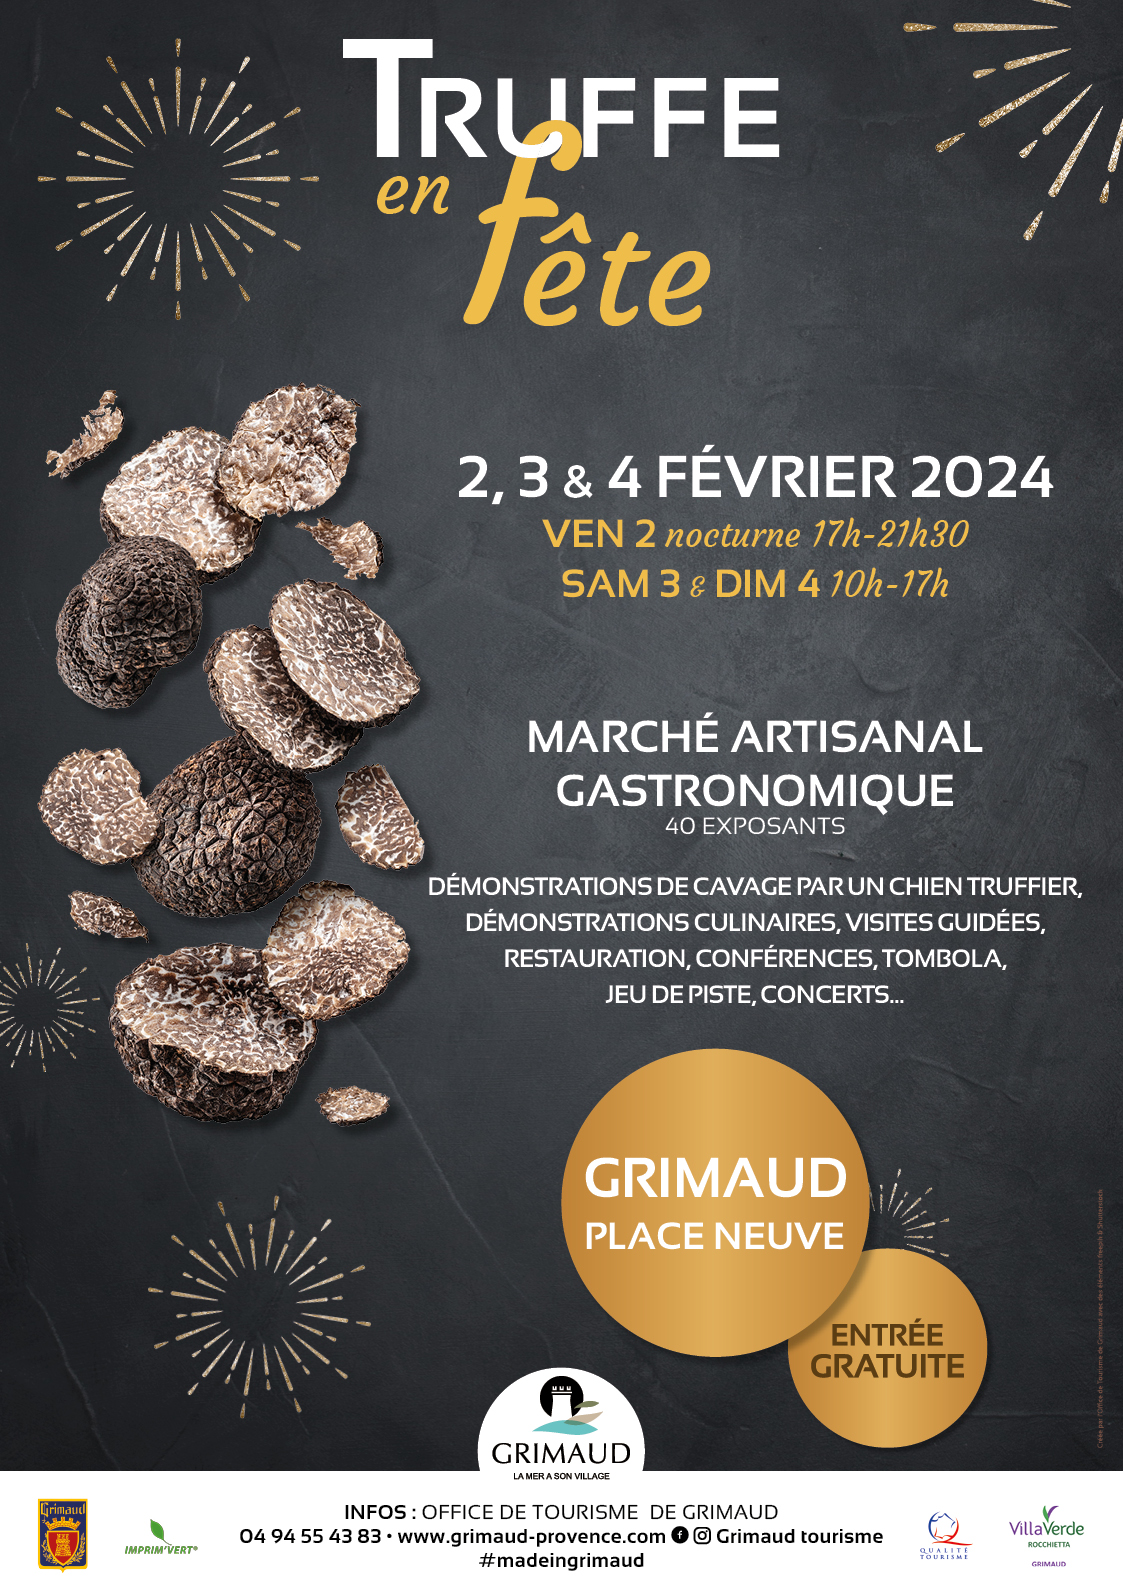 Truffes en fête 2024 - From February 2 to 4